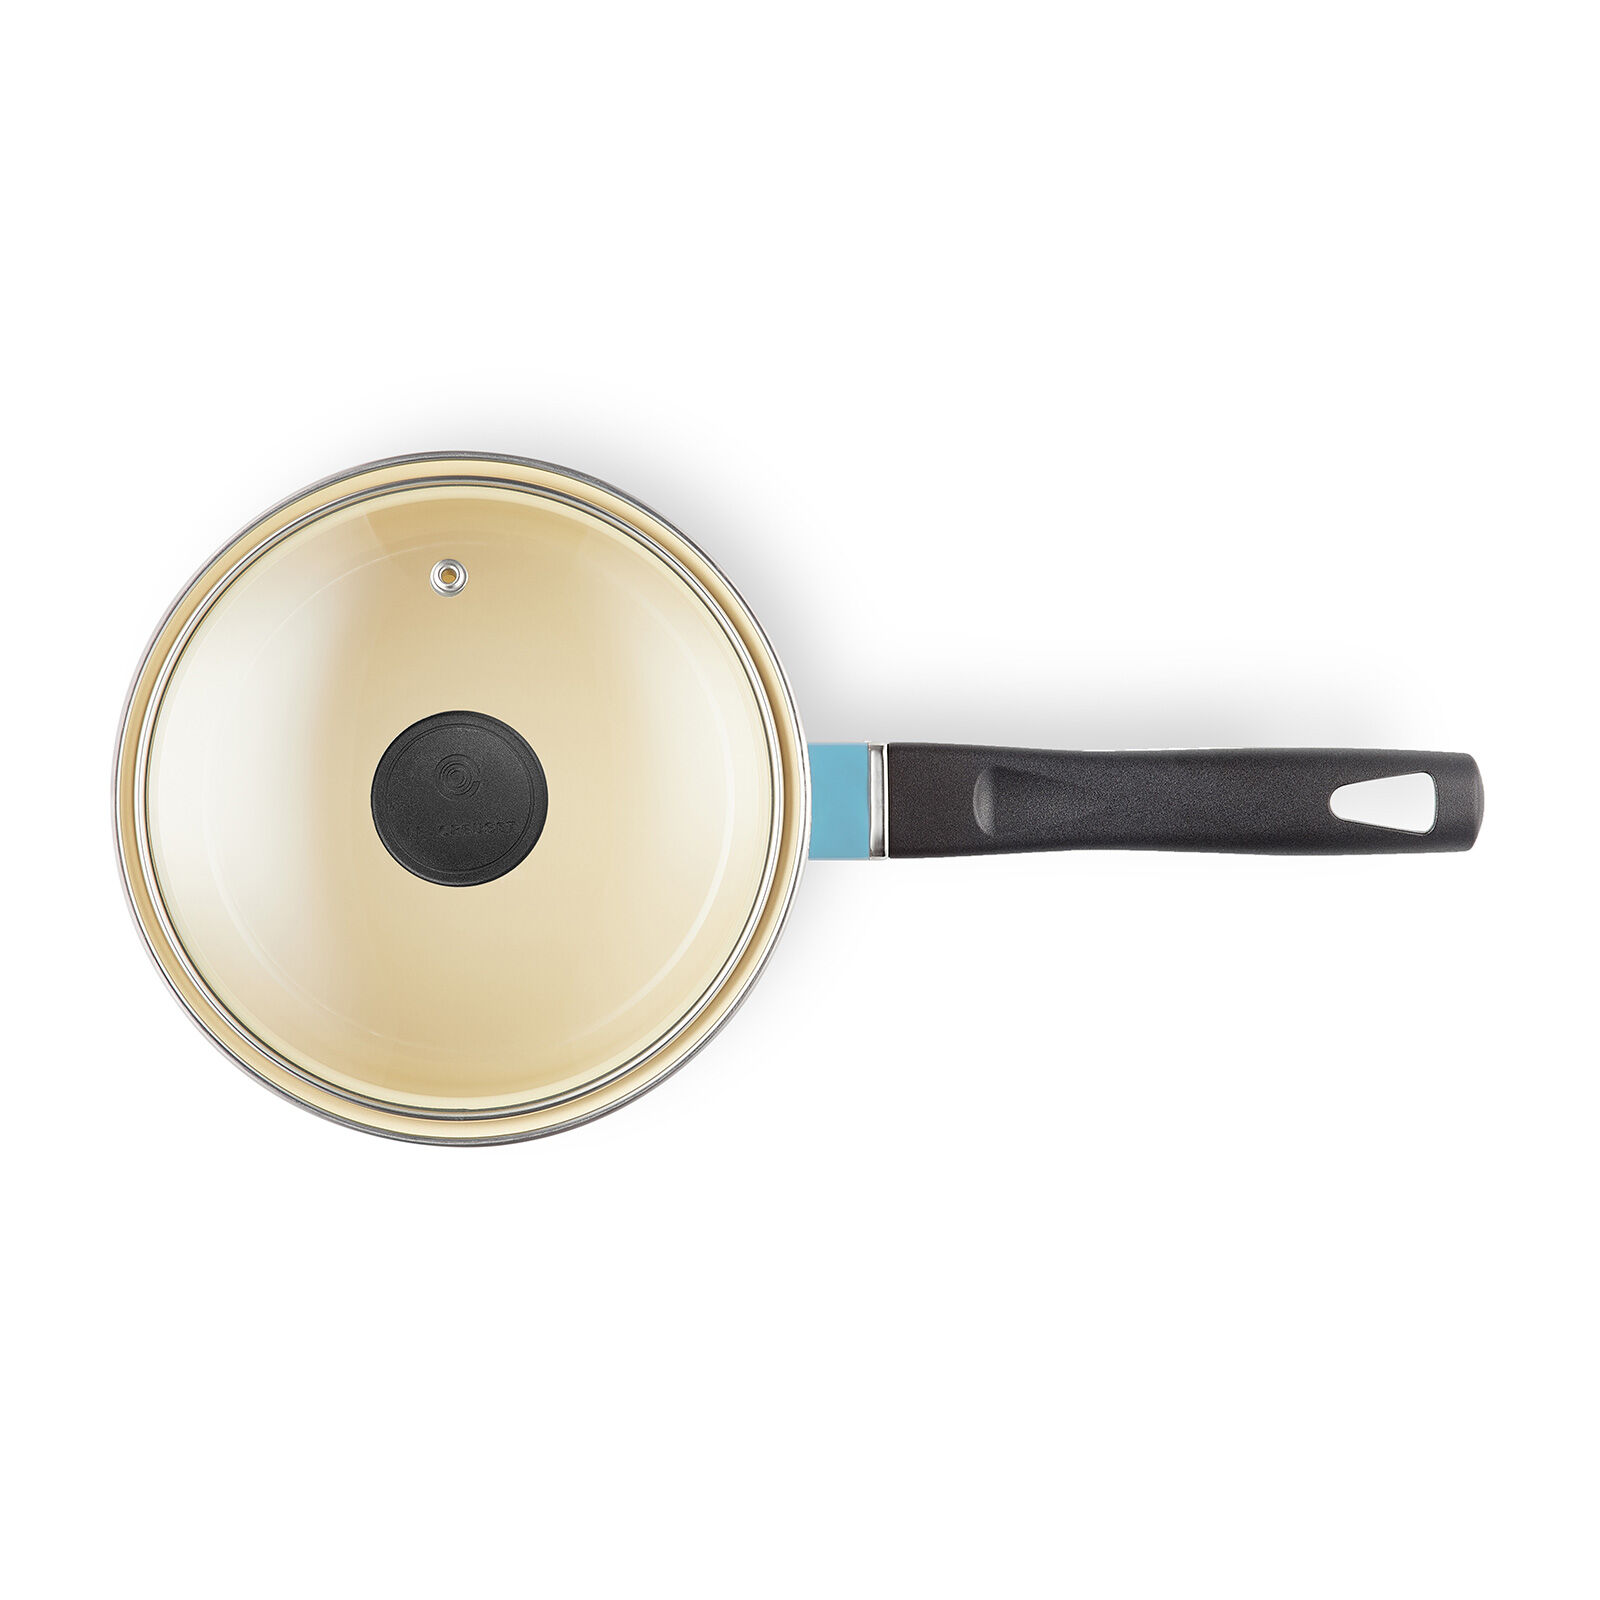 EOS ソースパン 14cm カリビアンブルー (ガラスフタ付き) | 片手鍋 